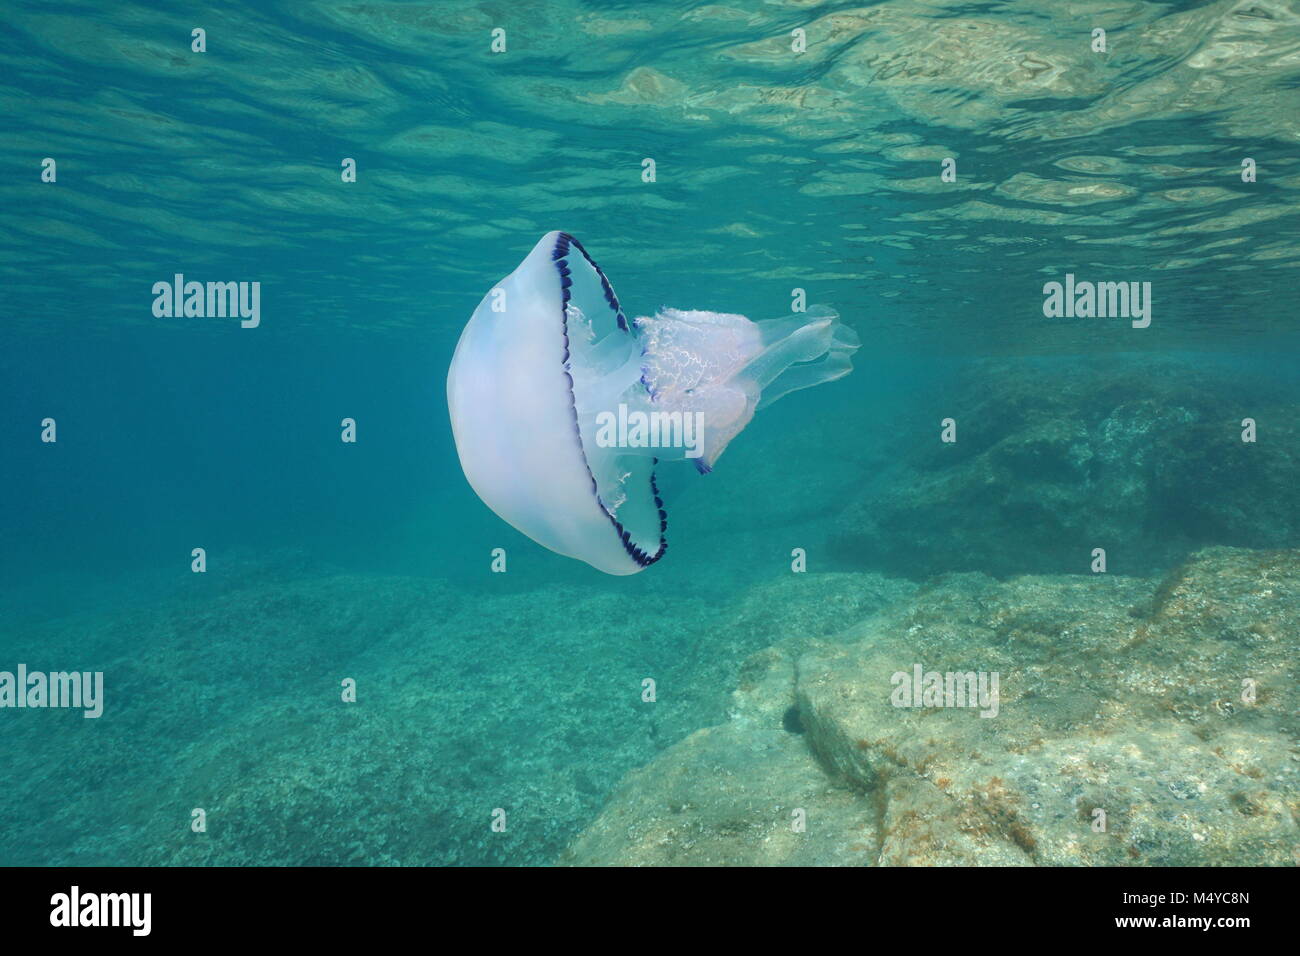 Underwater una canna meduse, Rhizostoma pulmo, nel mare Mediterraneo, Catalonia, Costa Brava, Cap de Creus, Spagna Foto Stock